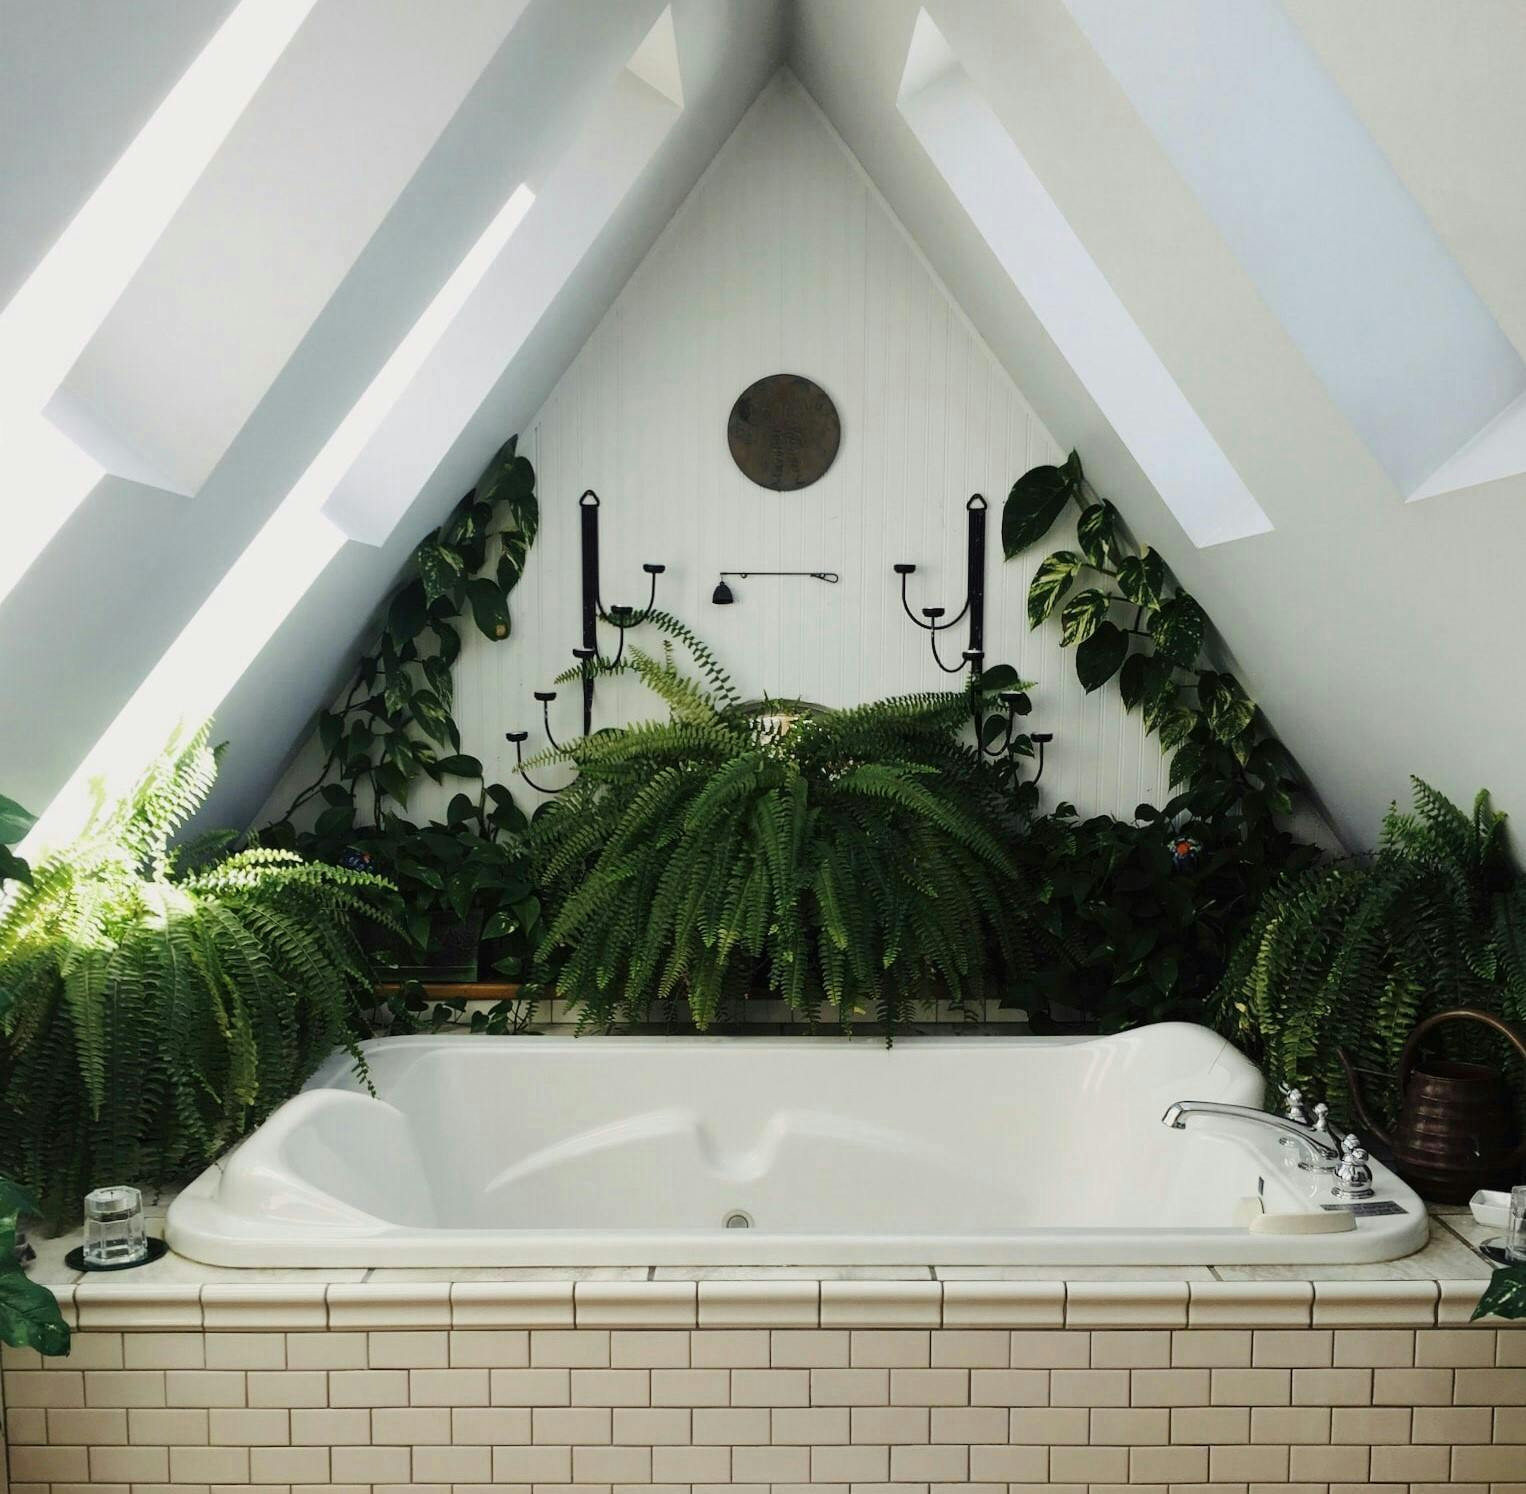 housing building attic loft indoors interior design tub